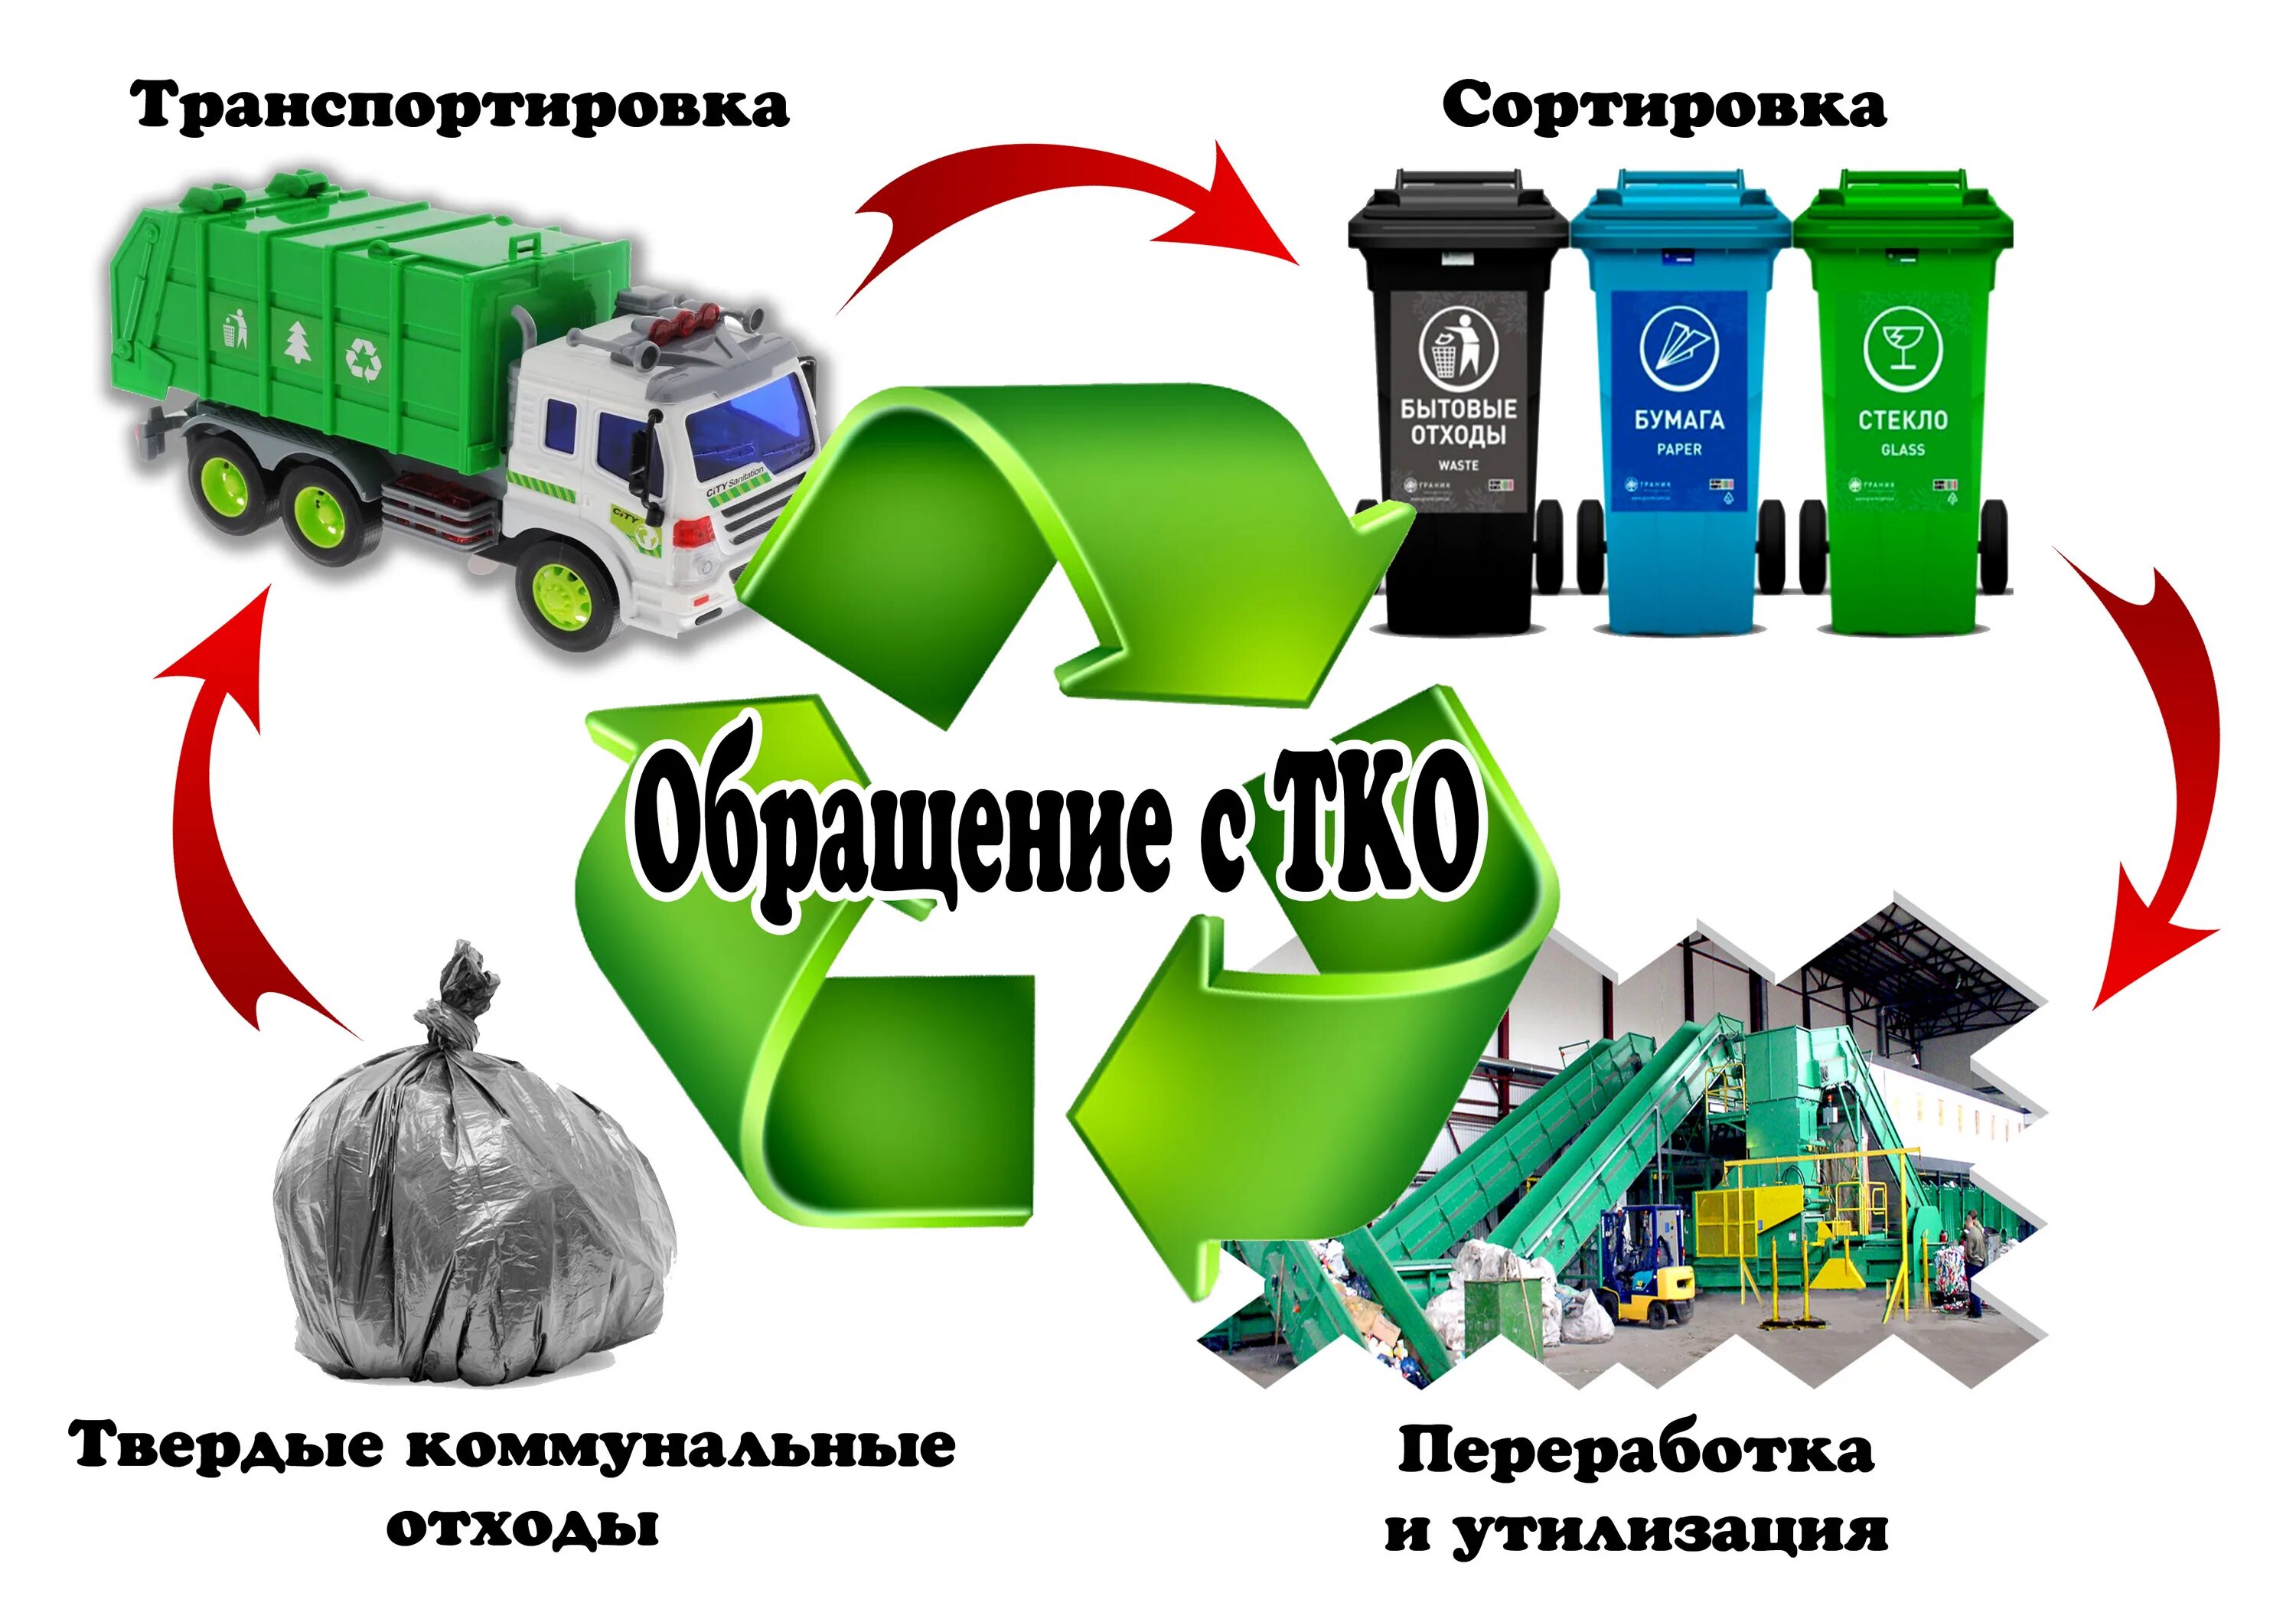 Сбор неопасных отходов. Схема утилизации отходов в России. Схема утилизации мусорных отходов. Обращении с твердыми коммунальными отходами (ТКО). Схема системы переработки и утилизации ТКО.